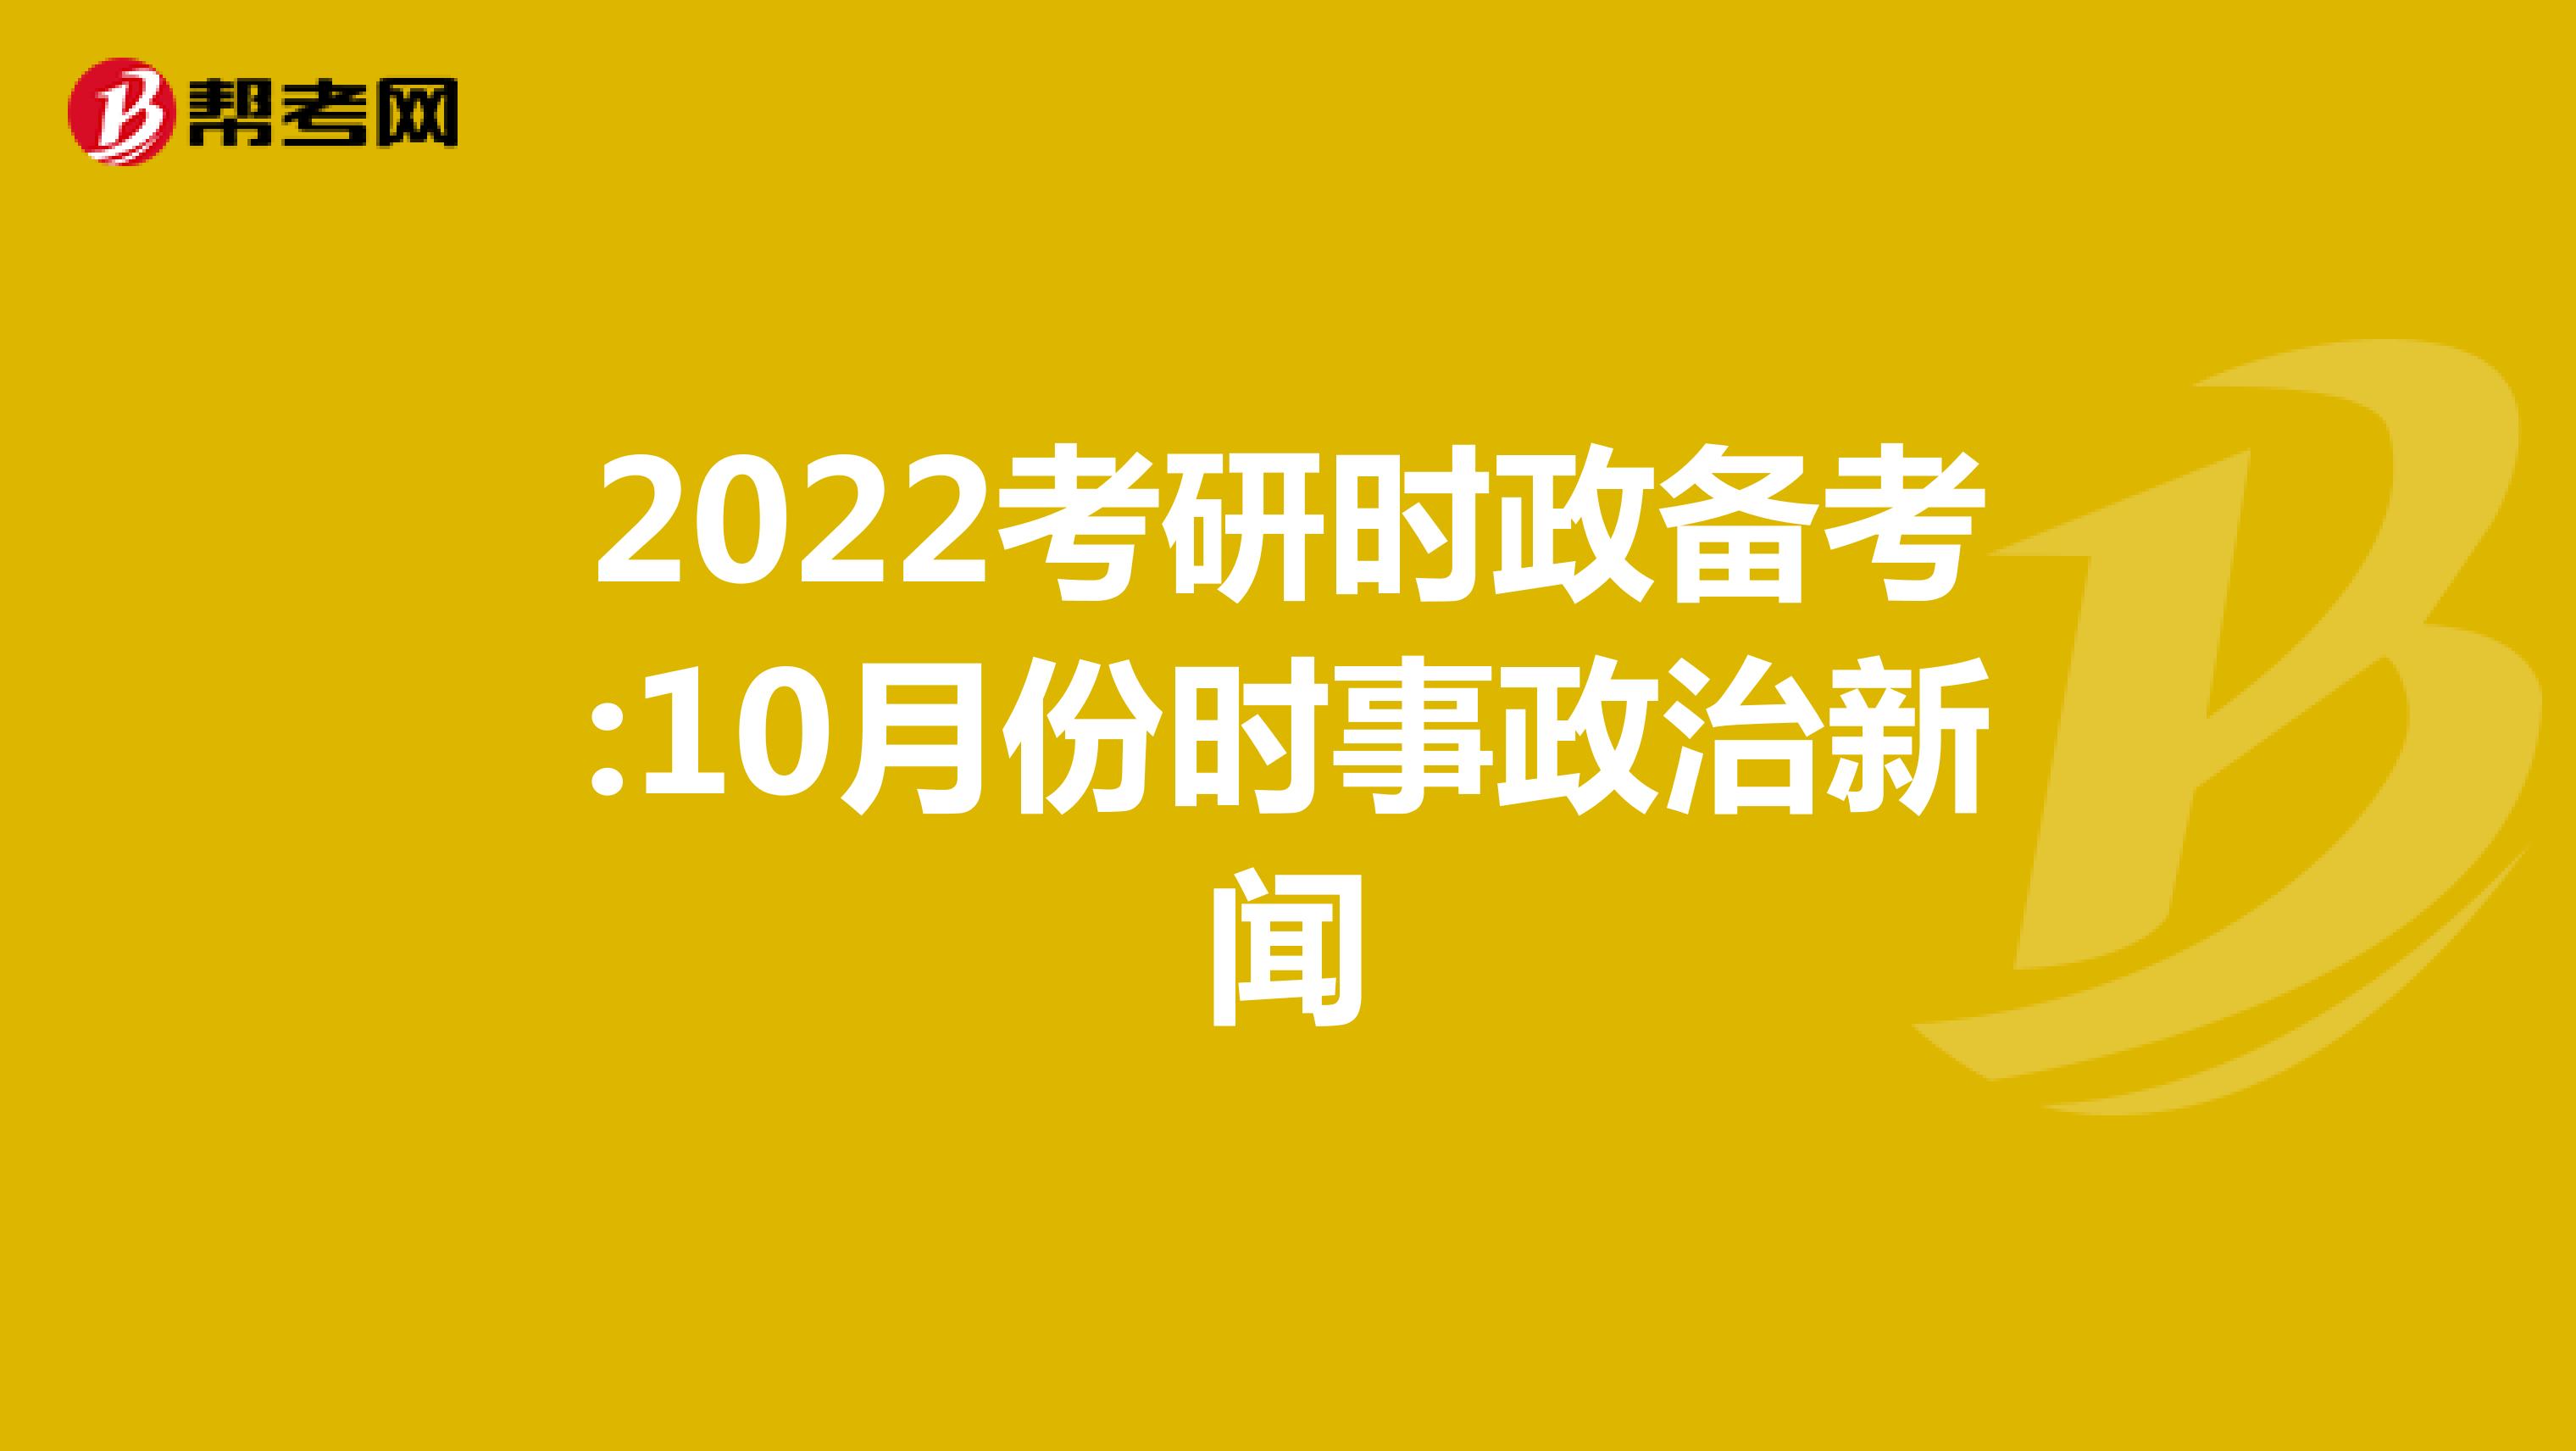 2022考研时政备考:10月份时事政治新闻